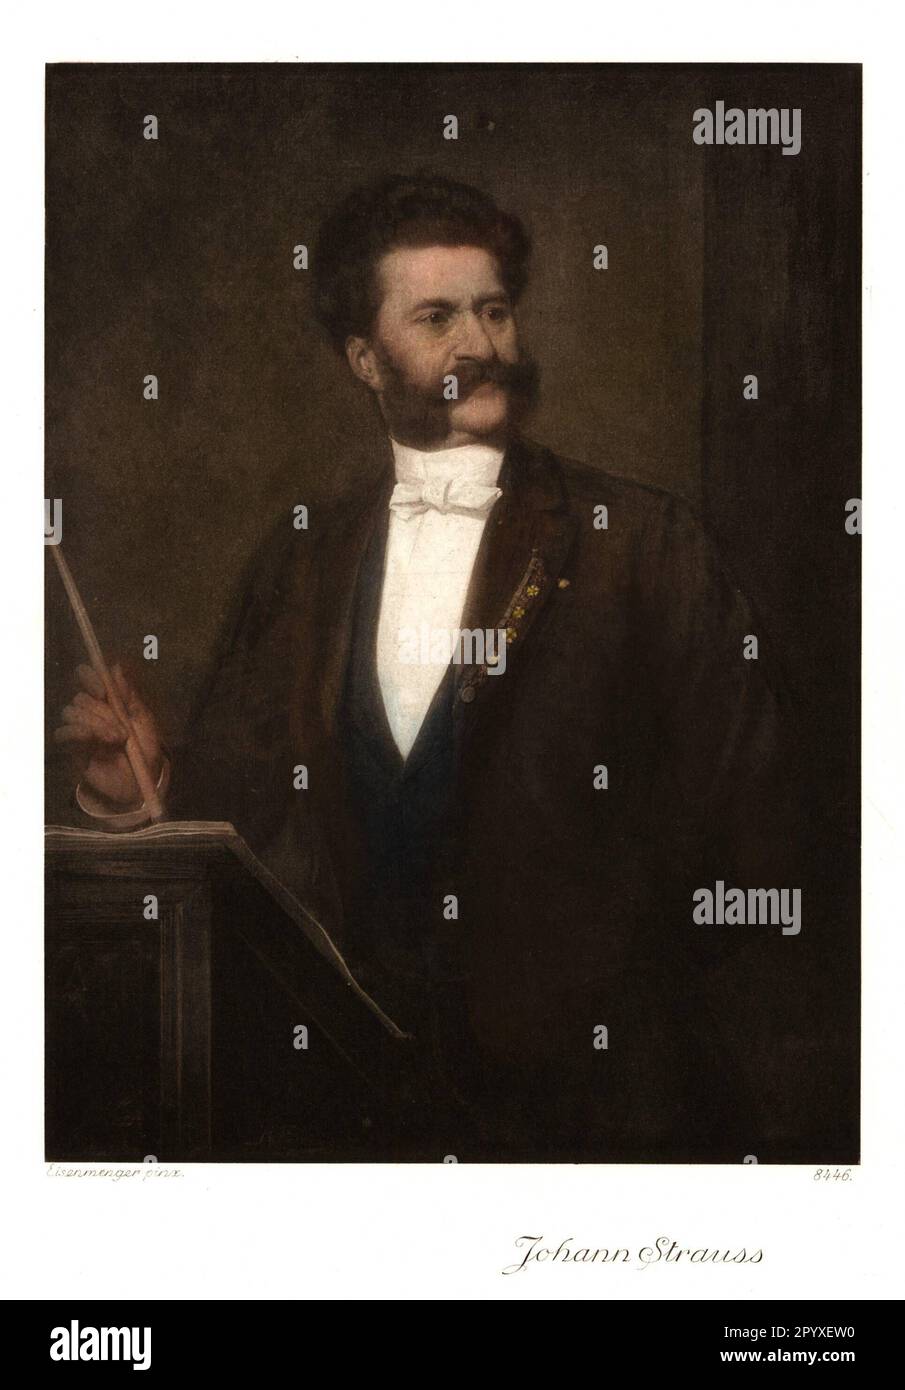 Johann Strauss (1825-1899), österreichischer Komponist. Malerei von Eisenmenger. Foto: Heliogravure, Corpus Imaginum, Hanfstaengl Collection. [Maschinelle Übersetzung] Stockfoto